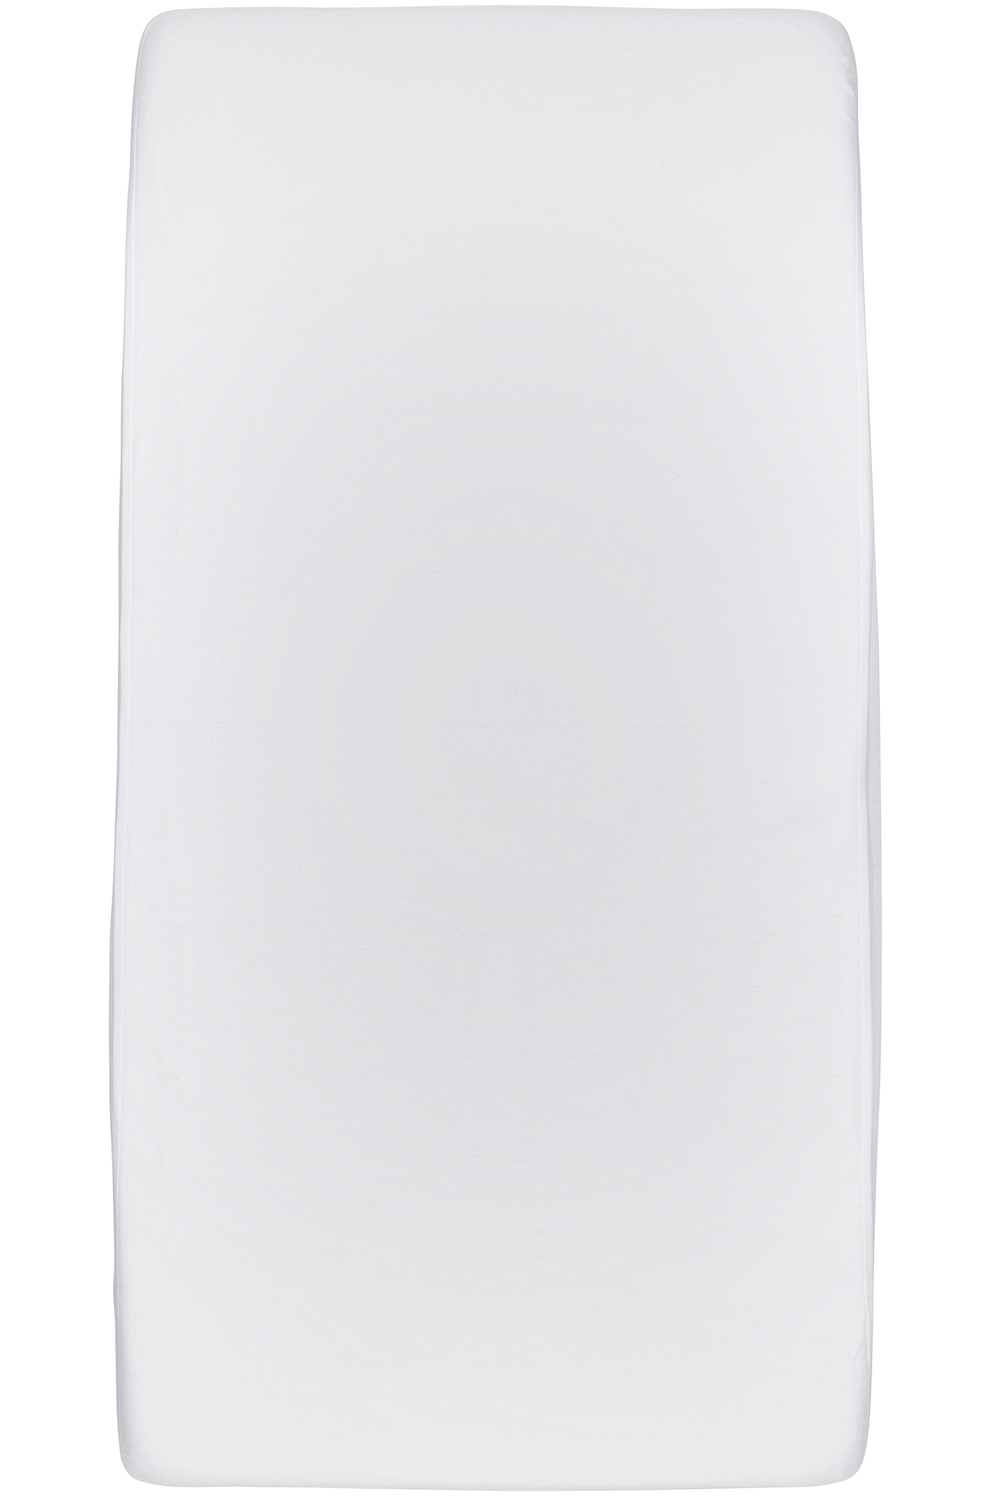 Waterdicht hoeslaken eenpersoonsbed - white - 90x210/220cm